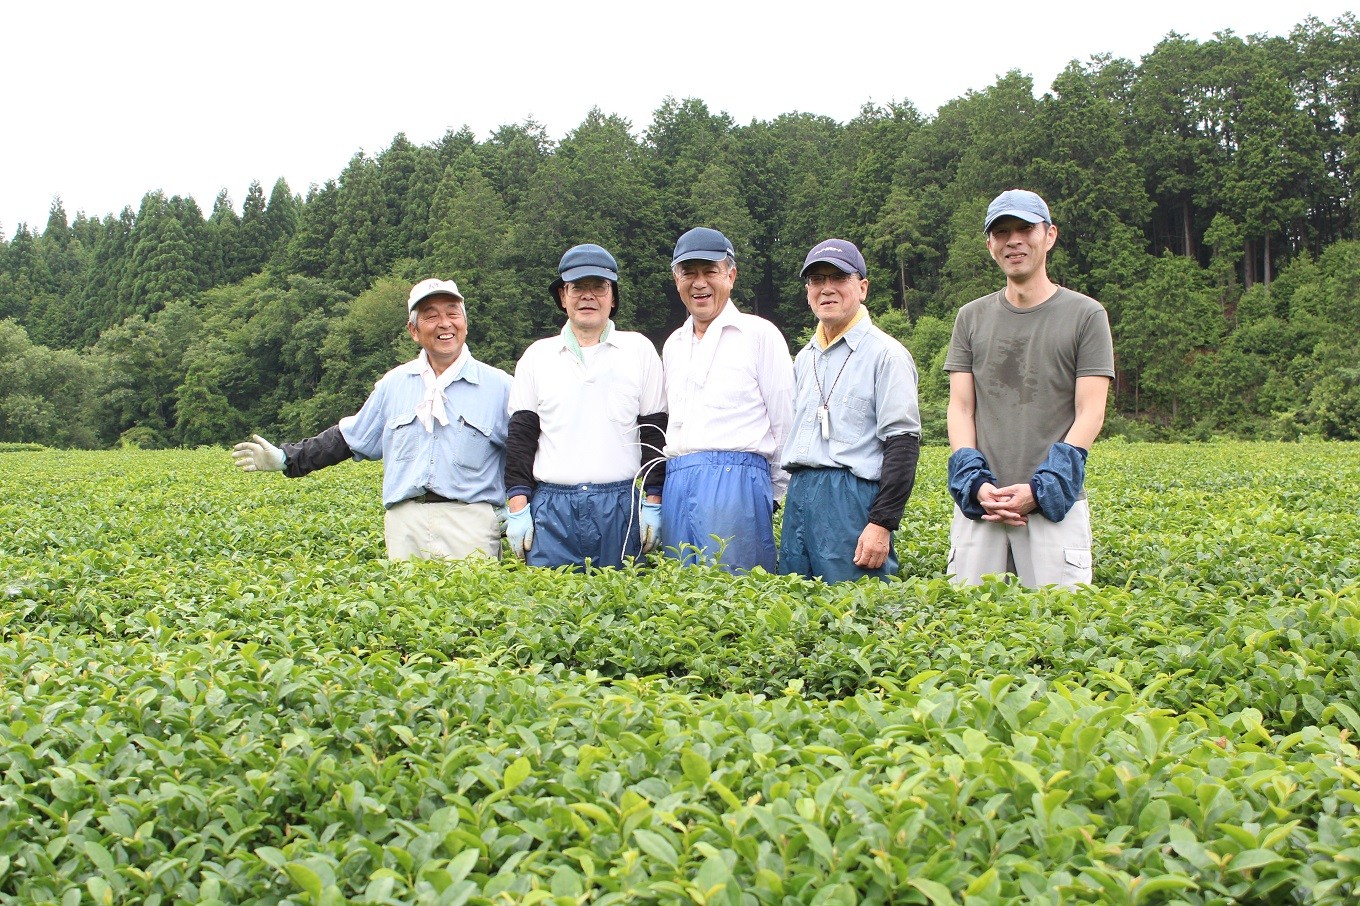 今年も良い茶葉が収穫できましたよ。笑顔で胸を張る生産組合の皆さん。